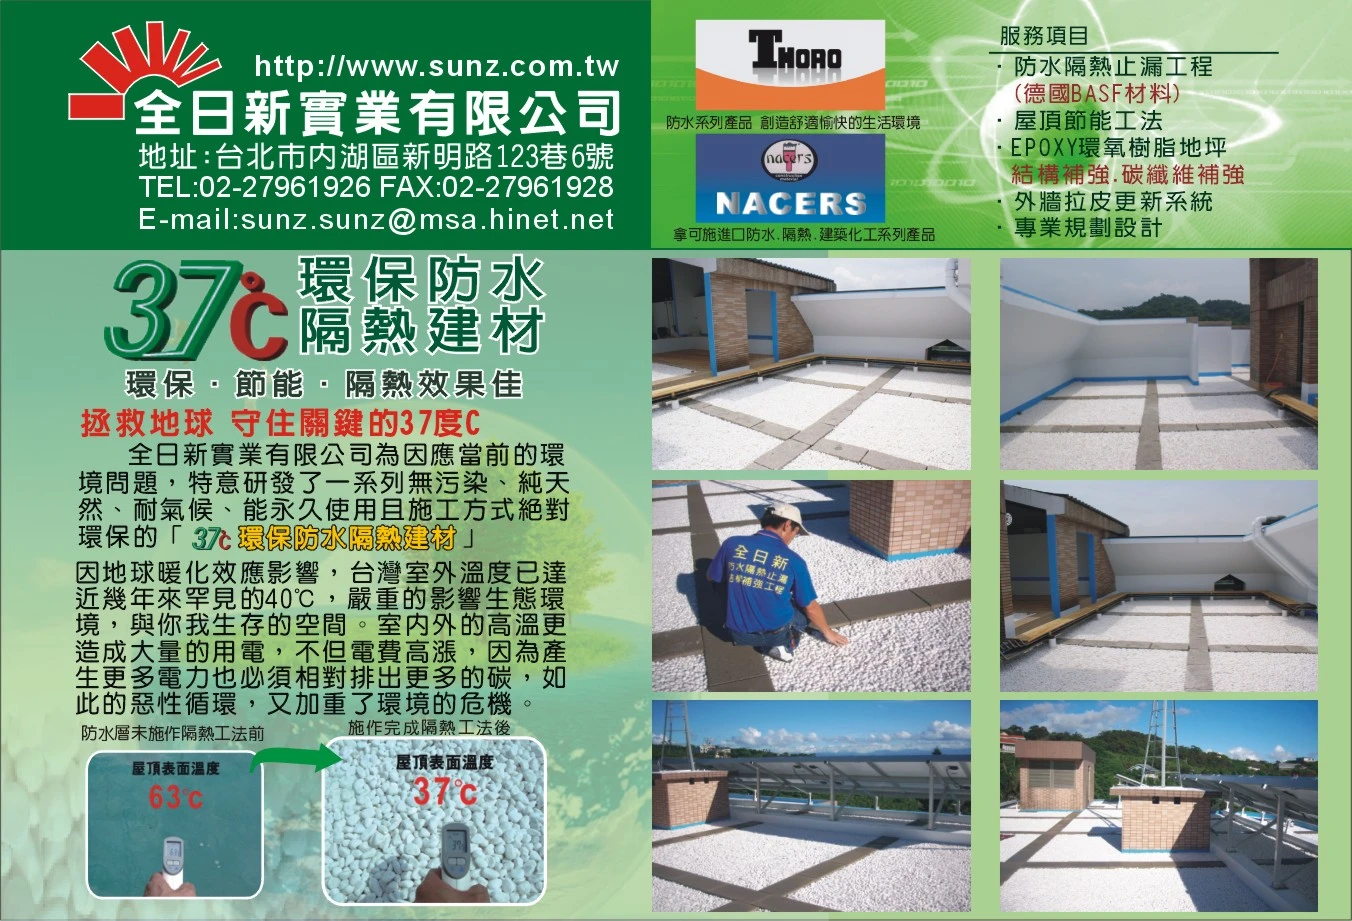 屋頂防水隔熱工程 結構補強工程 防水材料銷售